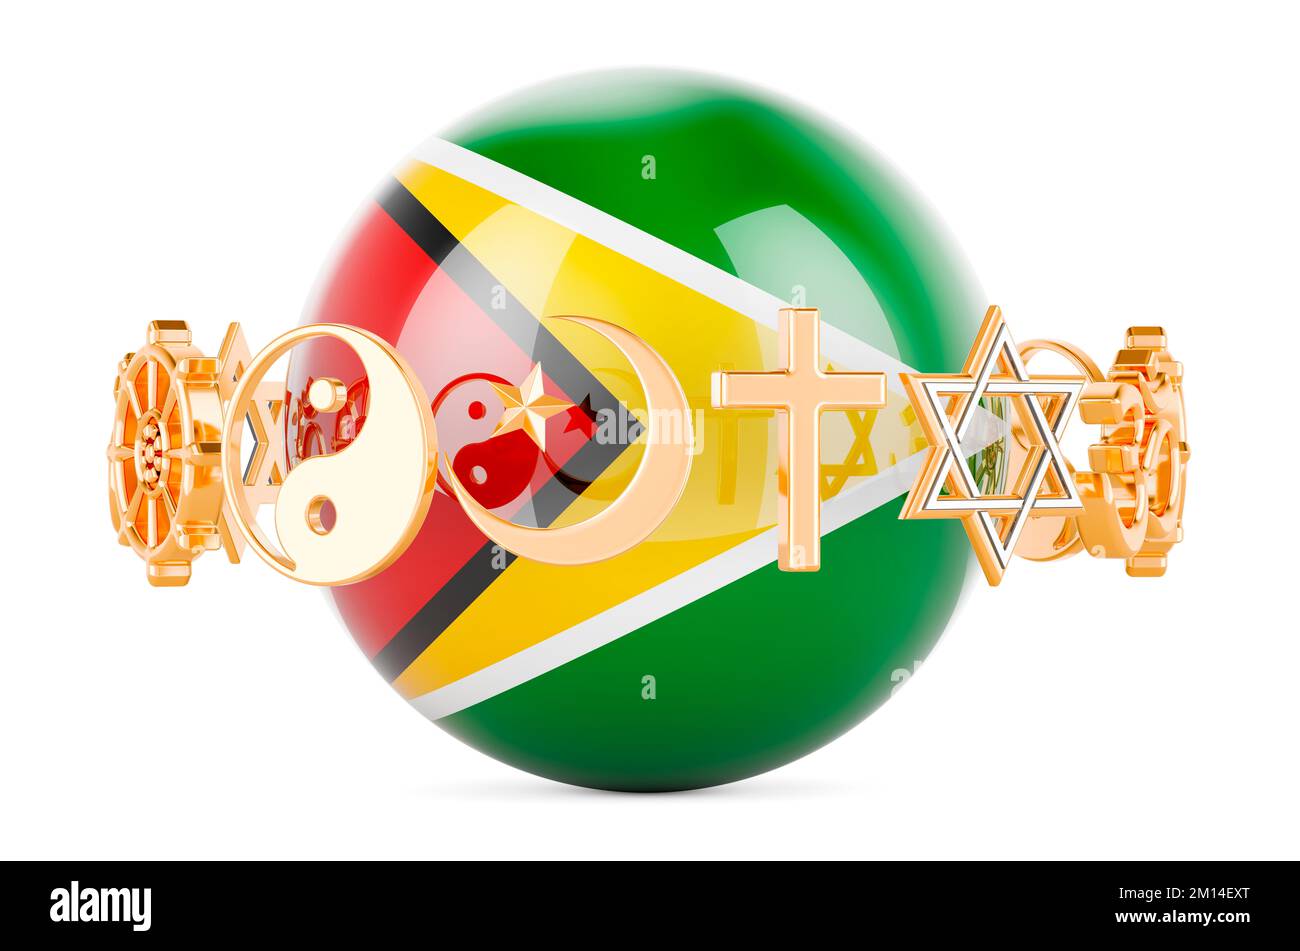 Die guyanische Flagge ist auf einer Kugel mit Religionssymbolen gezeichnet, 3D wird isoliert auf weißem Hintergrund dargestellt Stockfoto